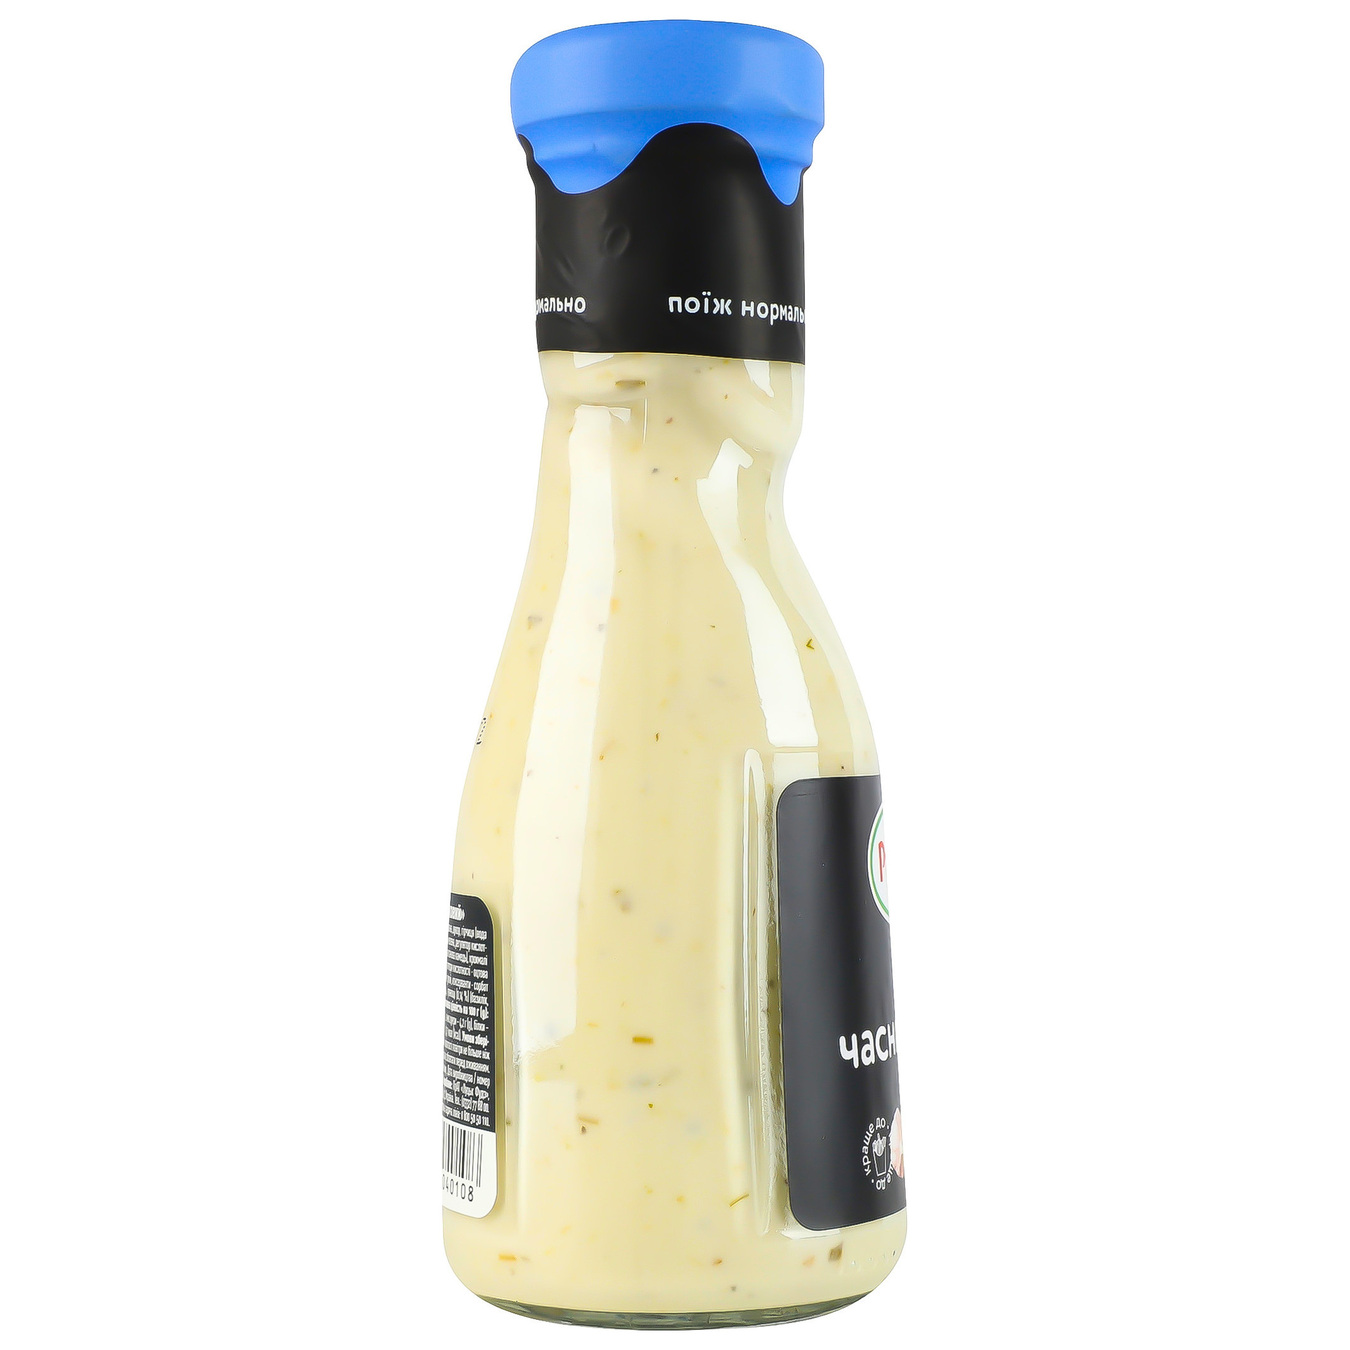 Runa mayonnaise garlic sauce sterilized 235g 8